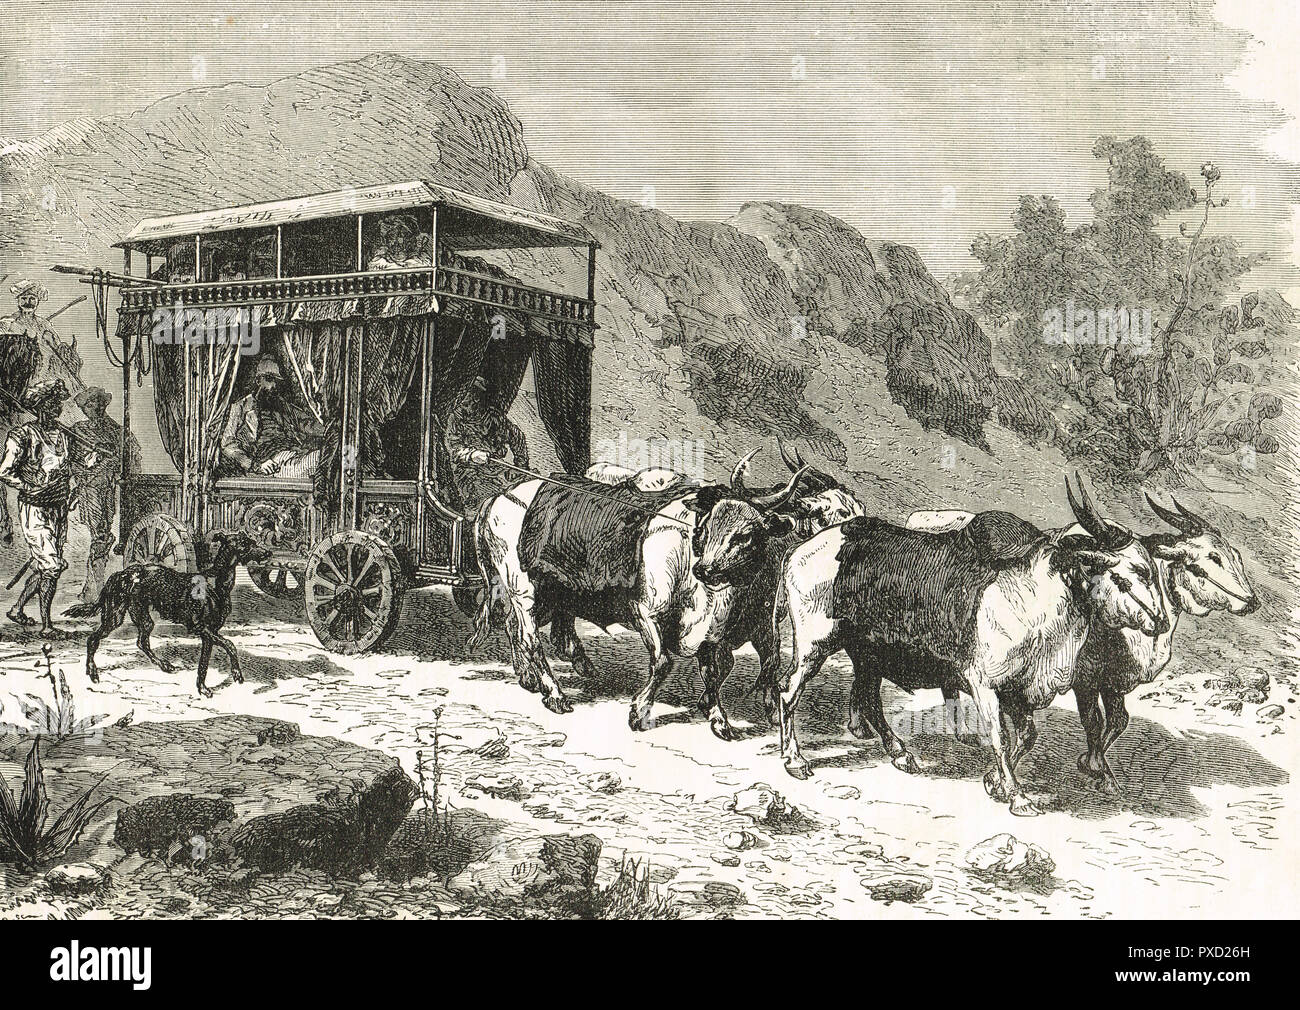 Un Chopaya ou hindoue, chariot de déplacement, les bovins provenant de l'Inde voyage transport, 19e siècle Banque D'Images